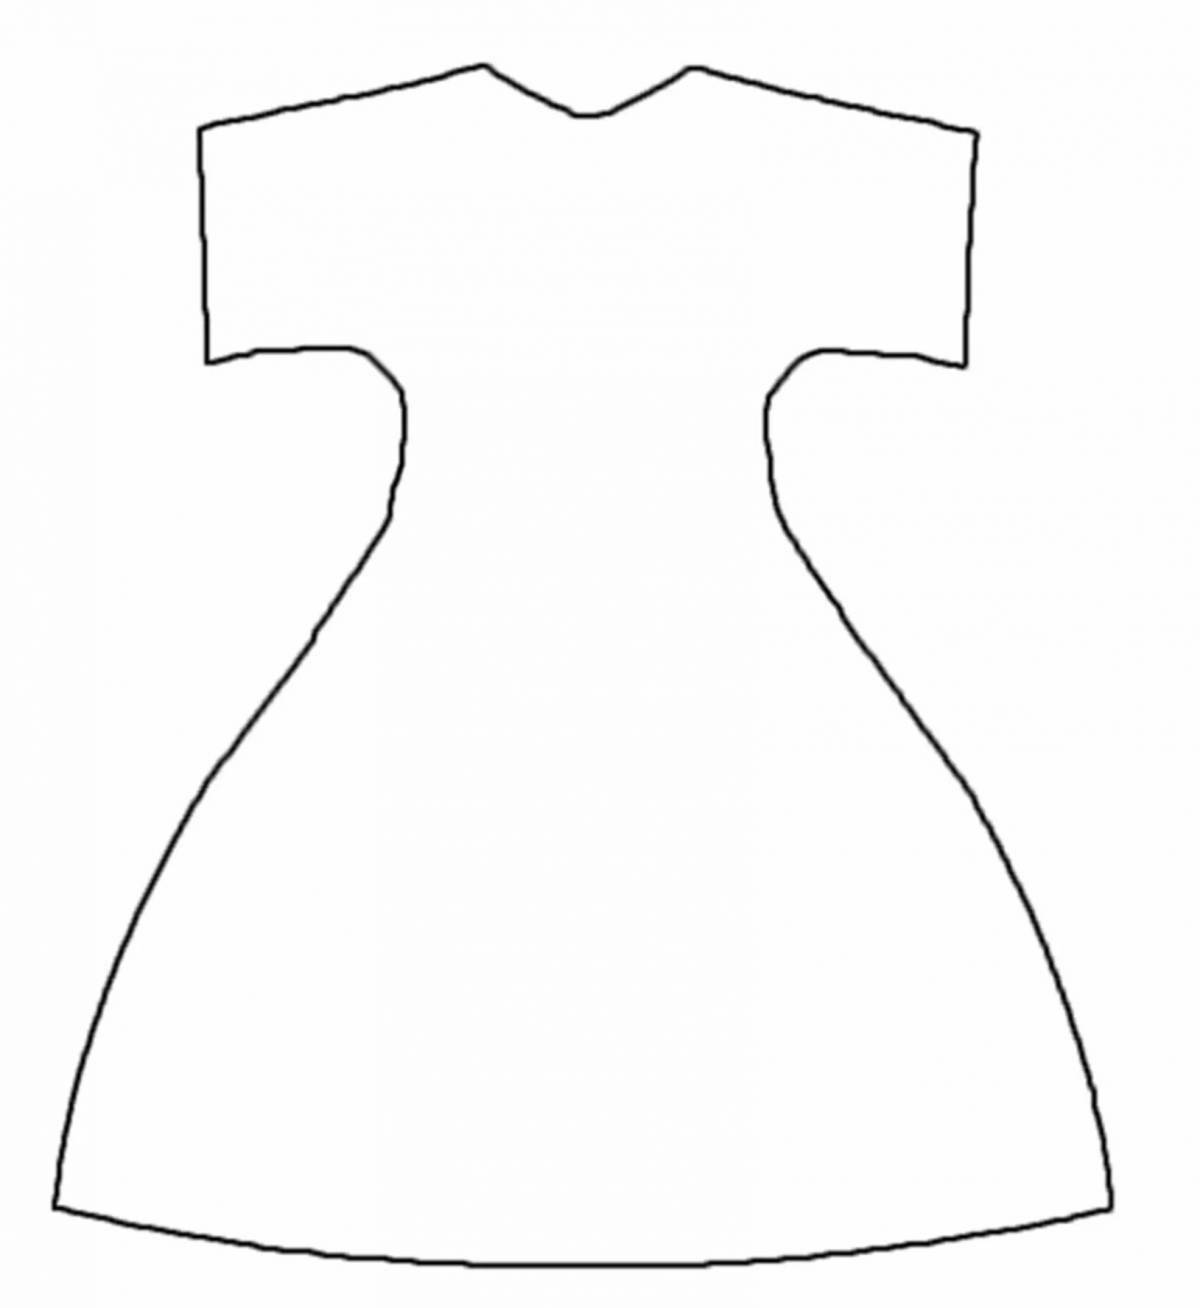 Раскраска яркое платье с выкройкой